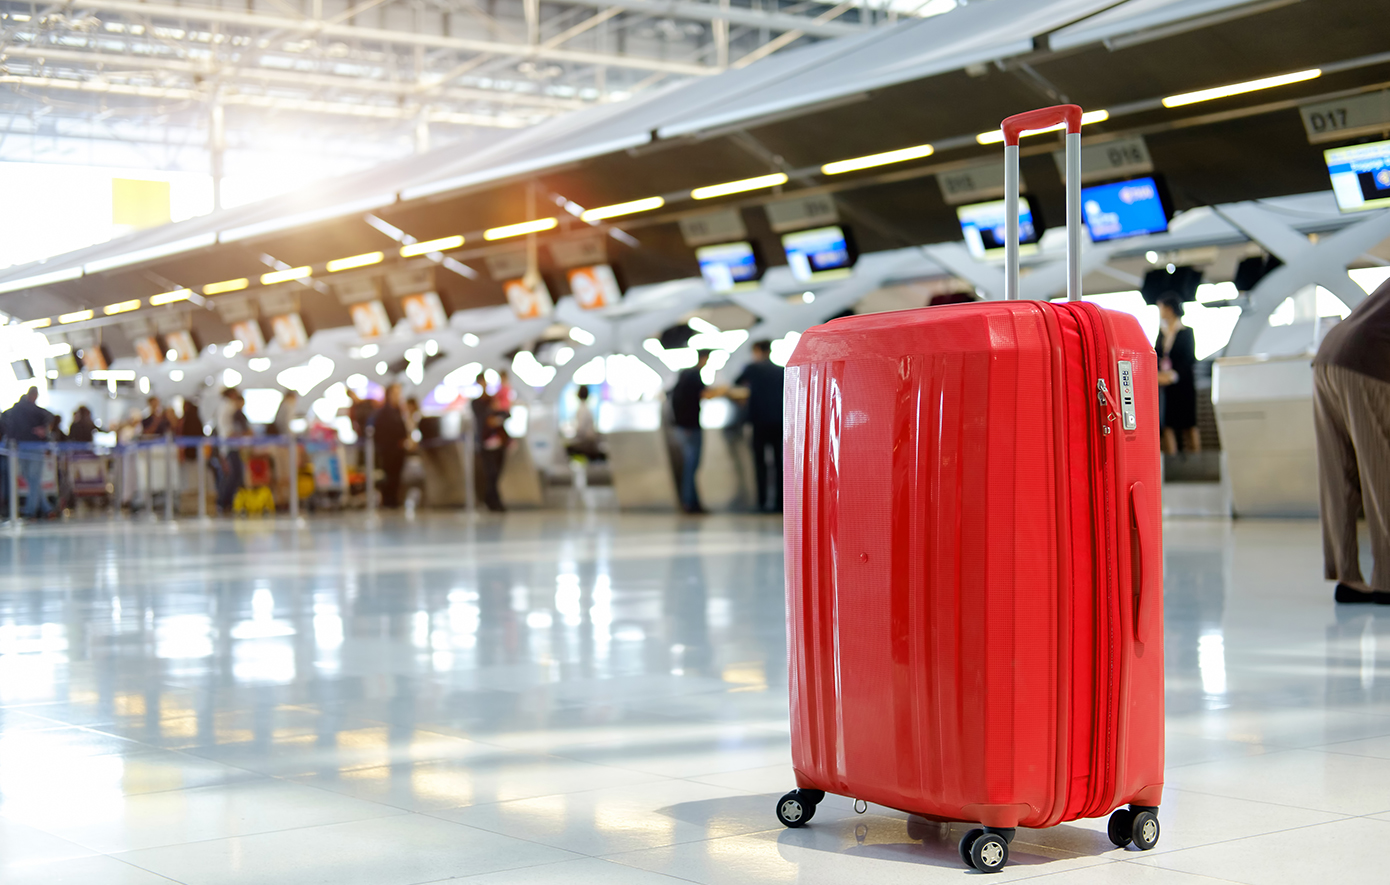 Γιατί μερικές αεροπορικές εταιρείες φορτώνουν πρώτα τις κόκκινες βαλίτσες